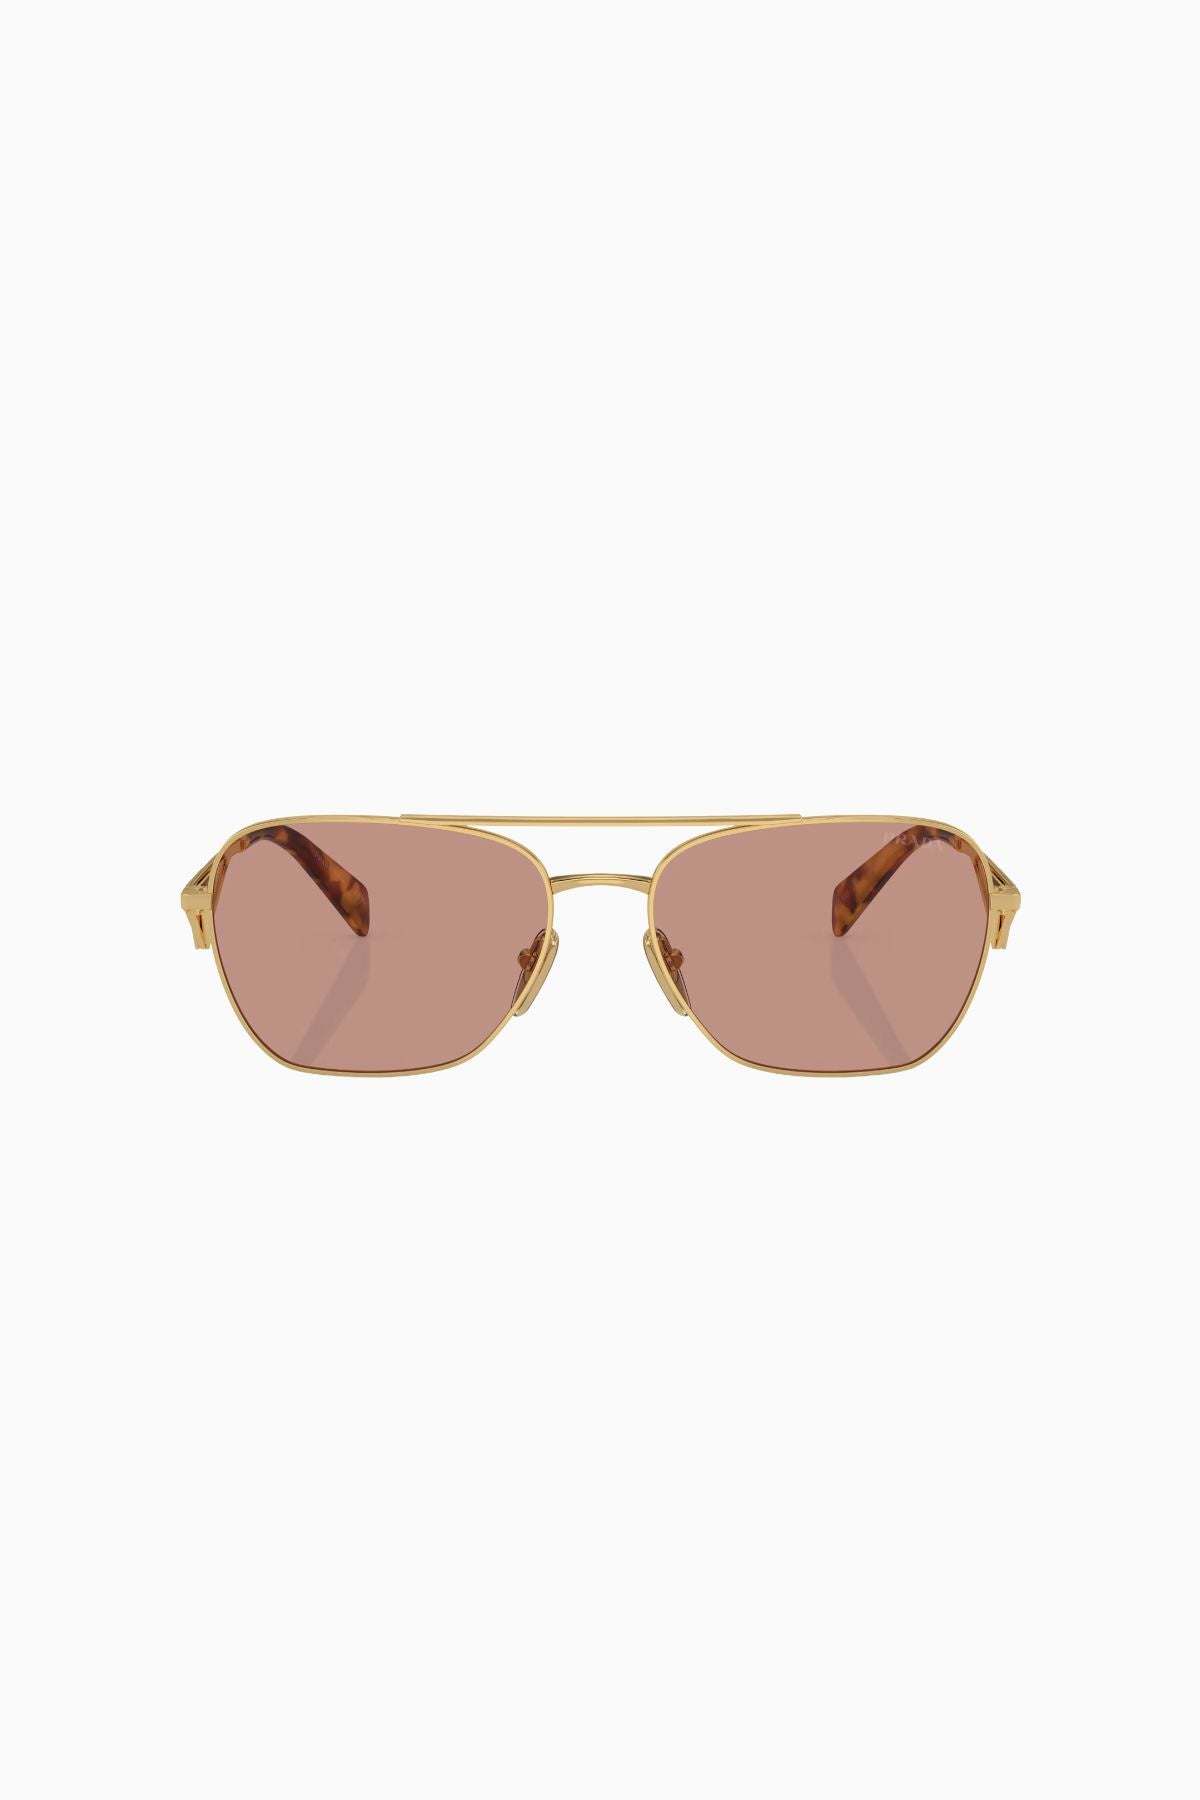 Prada Aviator Sunglasses - Gold/ Violet